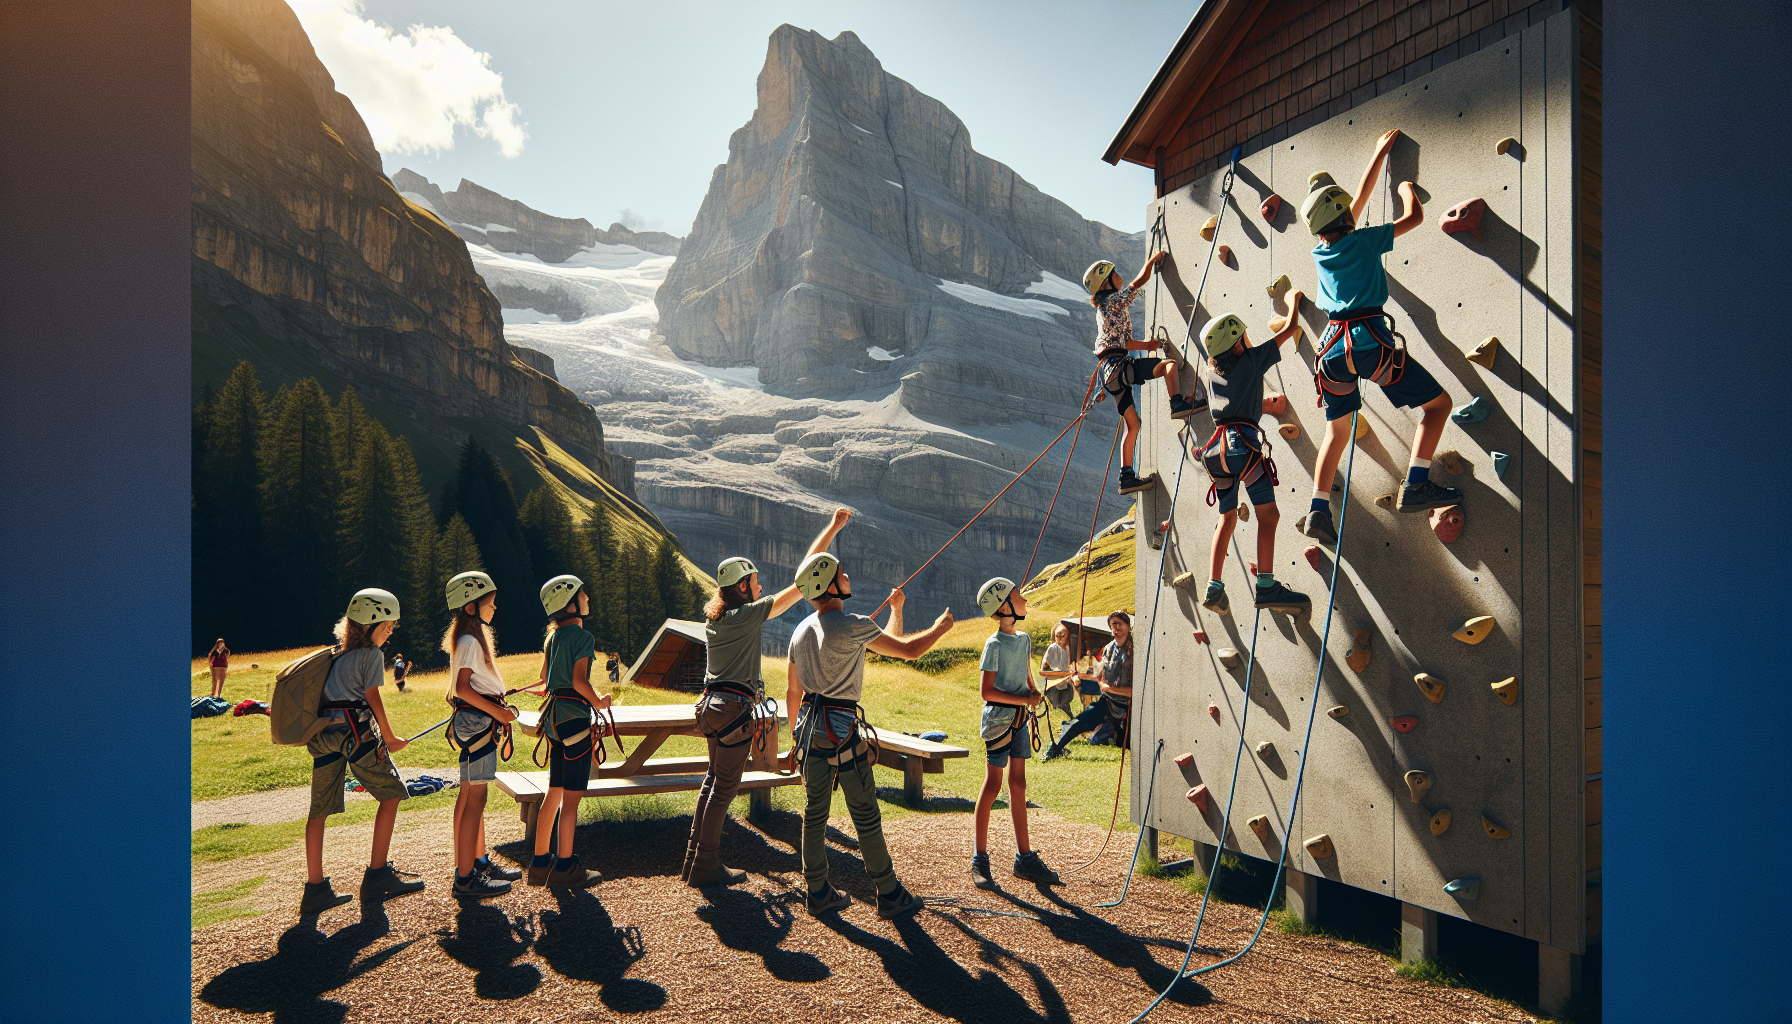 Enfants escaladant une paroi rocheuse dans un camp alpin en Suisse